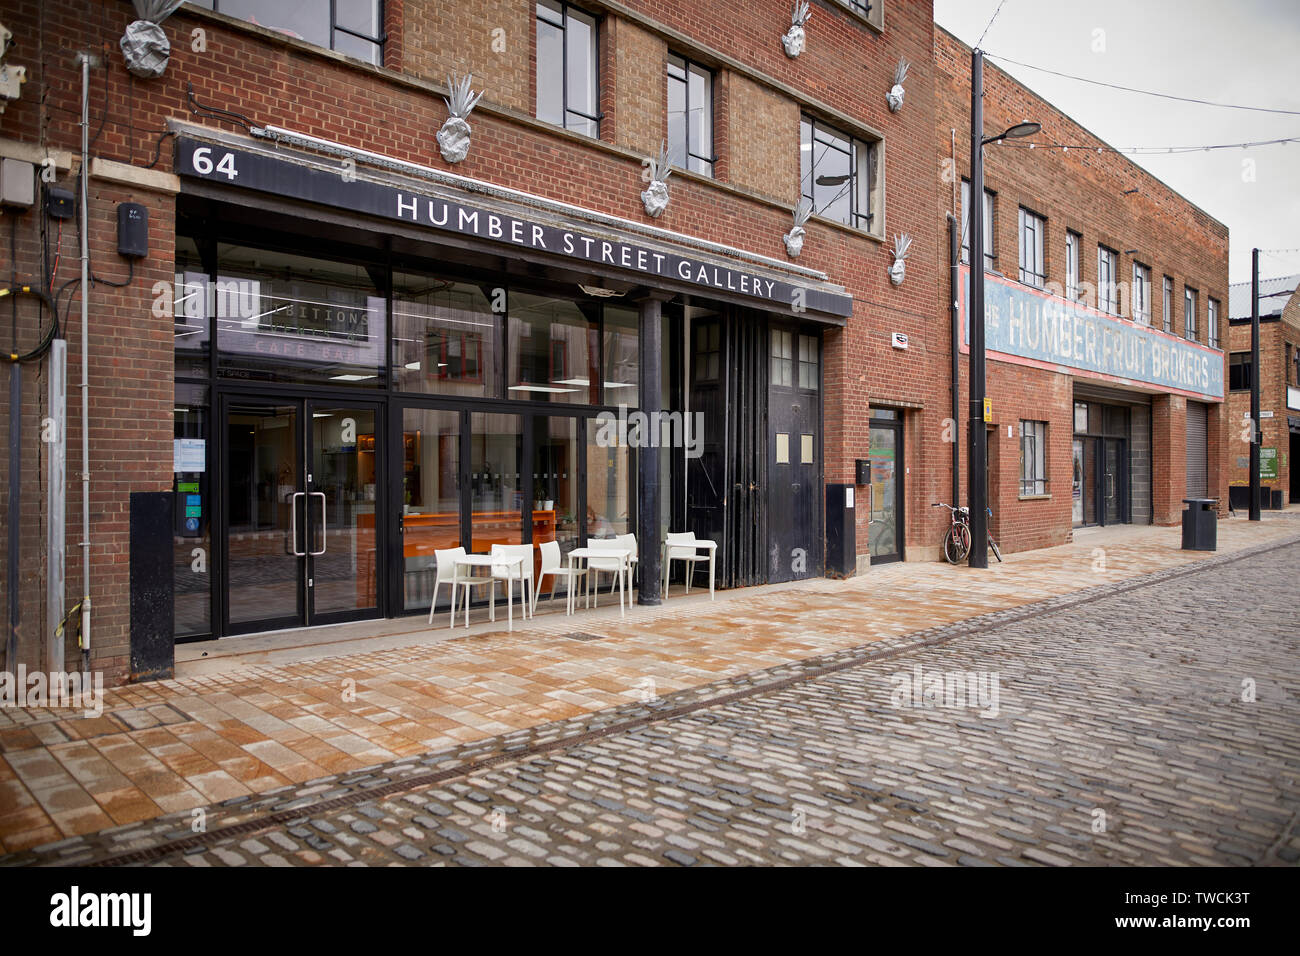 L'Humber Street Galerie dans la ville de Kingston Upon Hull. La galerie de trois étages a ouvert ses portes en février 2017 dans le cadre de cette année, la Ville de Hull UK Banque D'Images